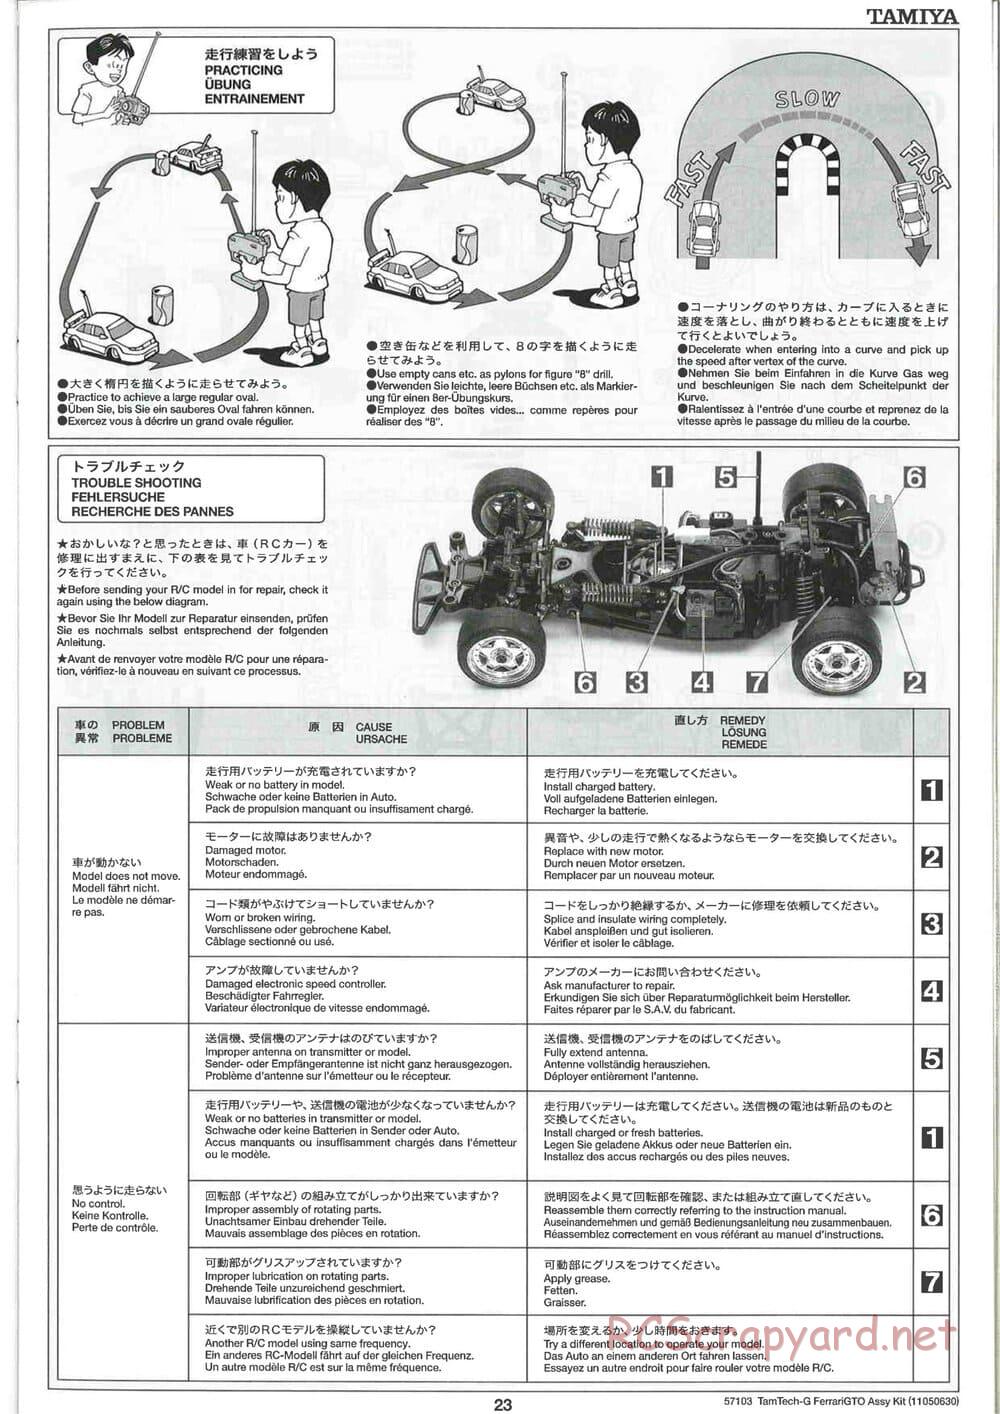 Tamiya - Ferrari 288 GTO - GT-01 Chassis - Manual - Page 23